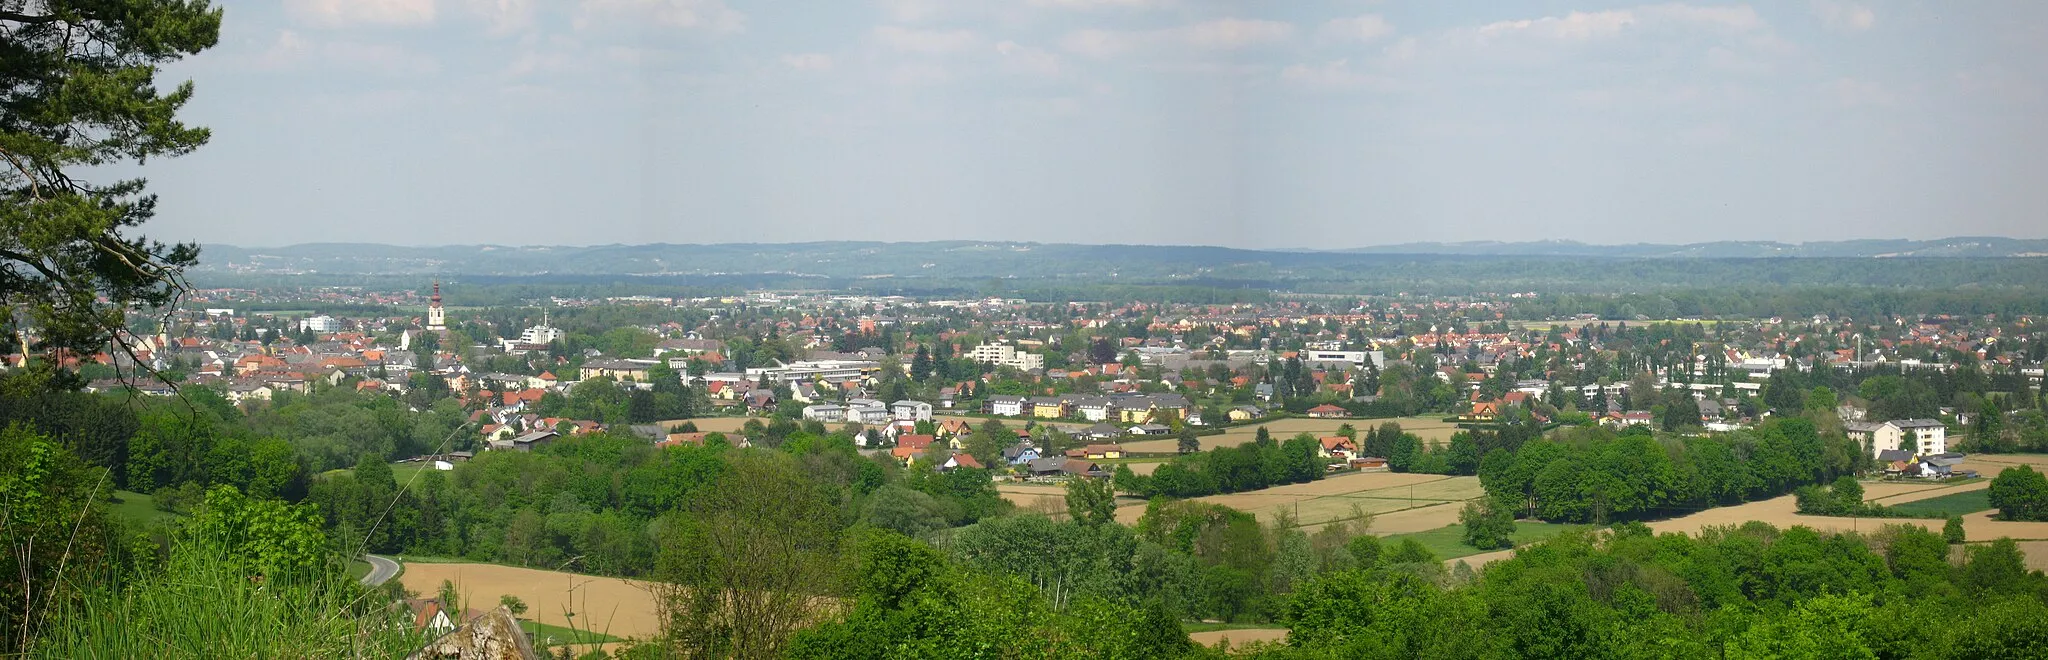 Image of Leibnitz